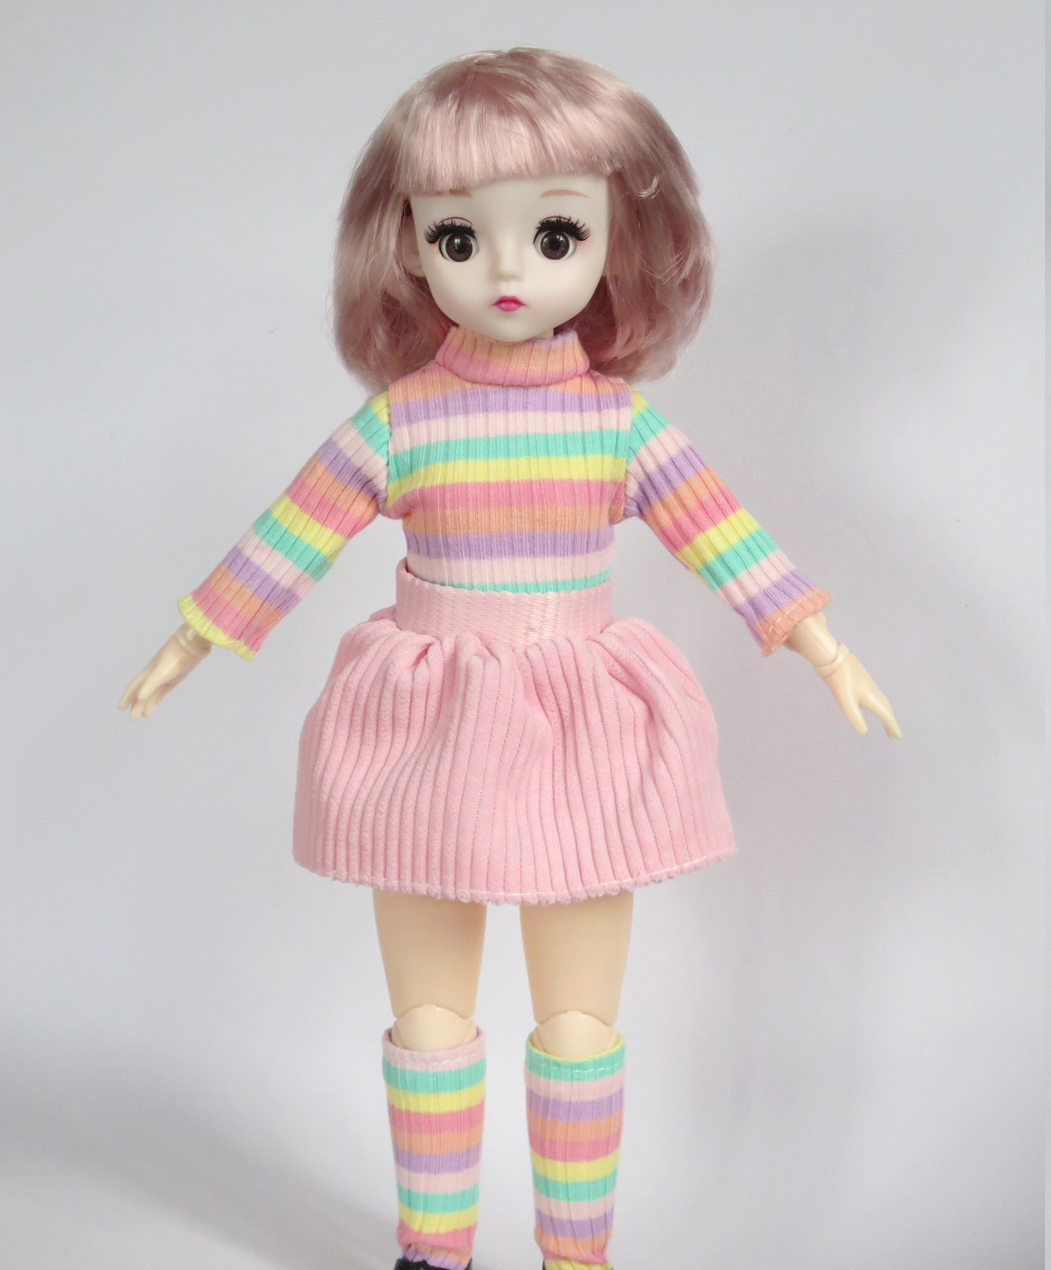 เสื้อผ้าตุ๊กตาเด็ก BJD 1:4 สำหรับตุ๊กตาความสูง 30cm (Fat Body) (ไม่รวมตุ๊กตาและรองเท้า)